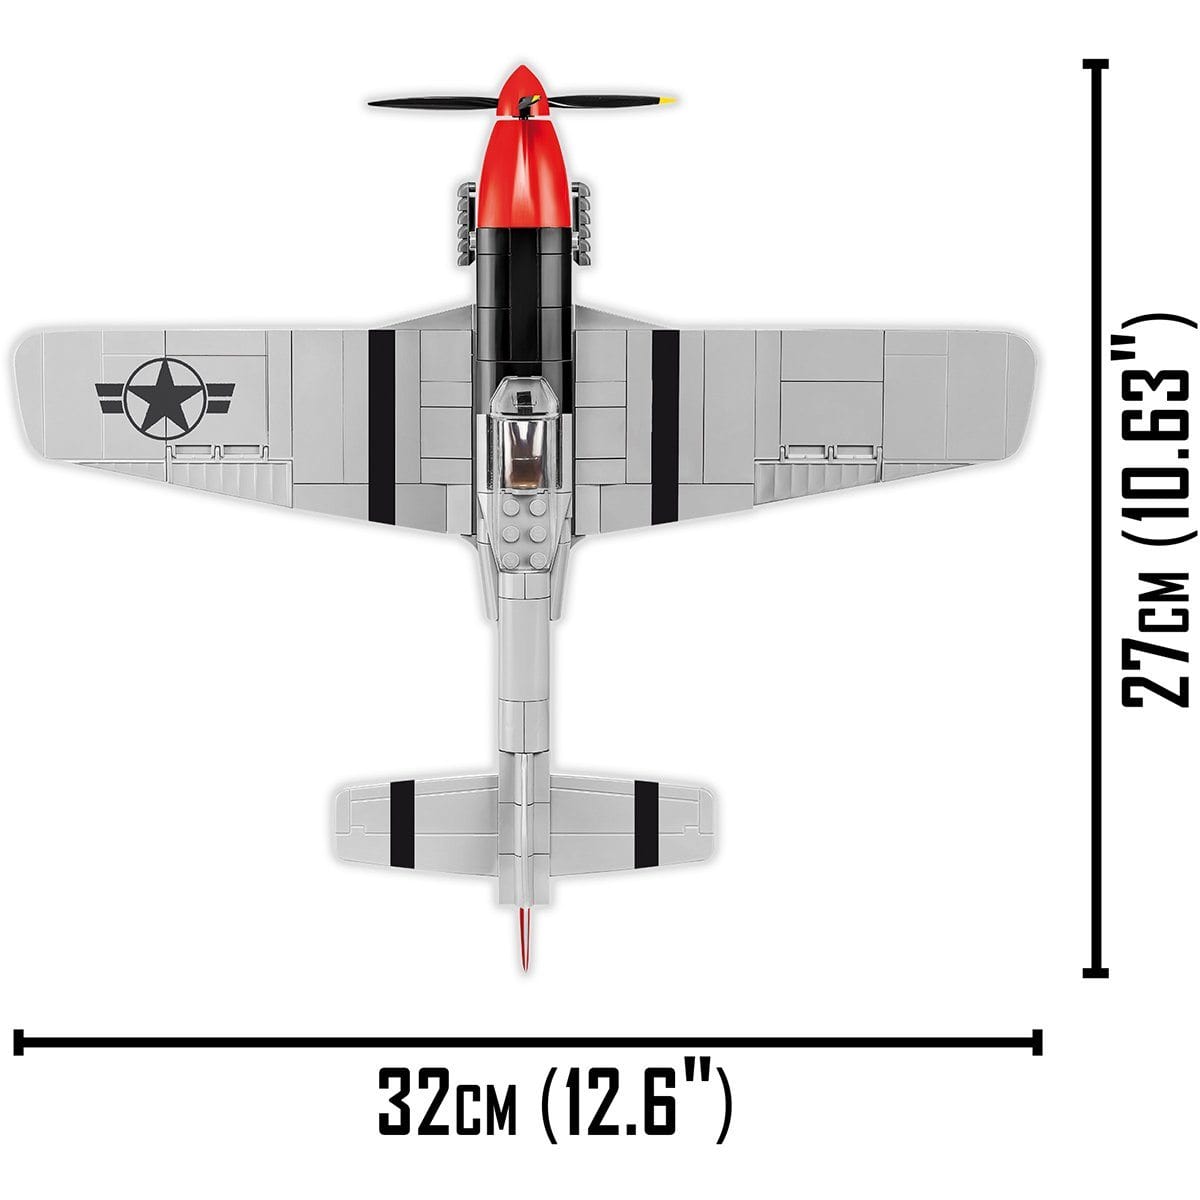 Top Gun Mustang P-51D 265pc Set Cobi Blocks